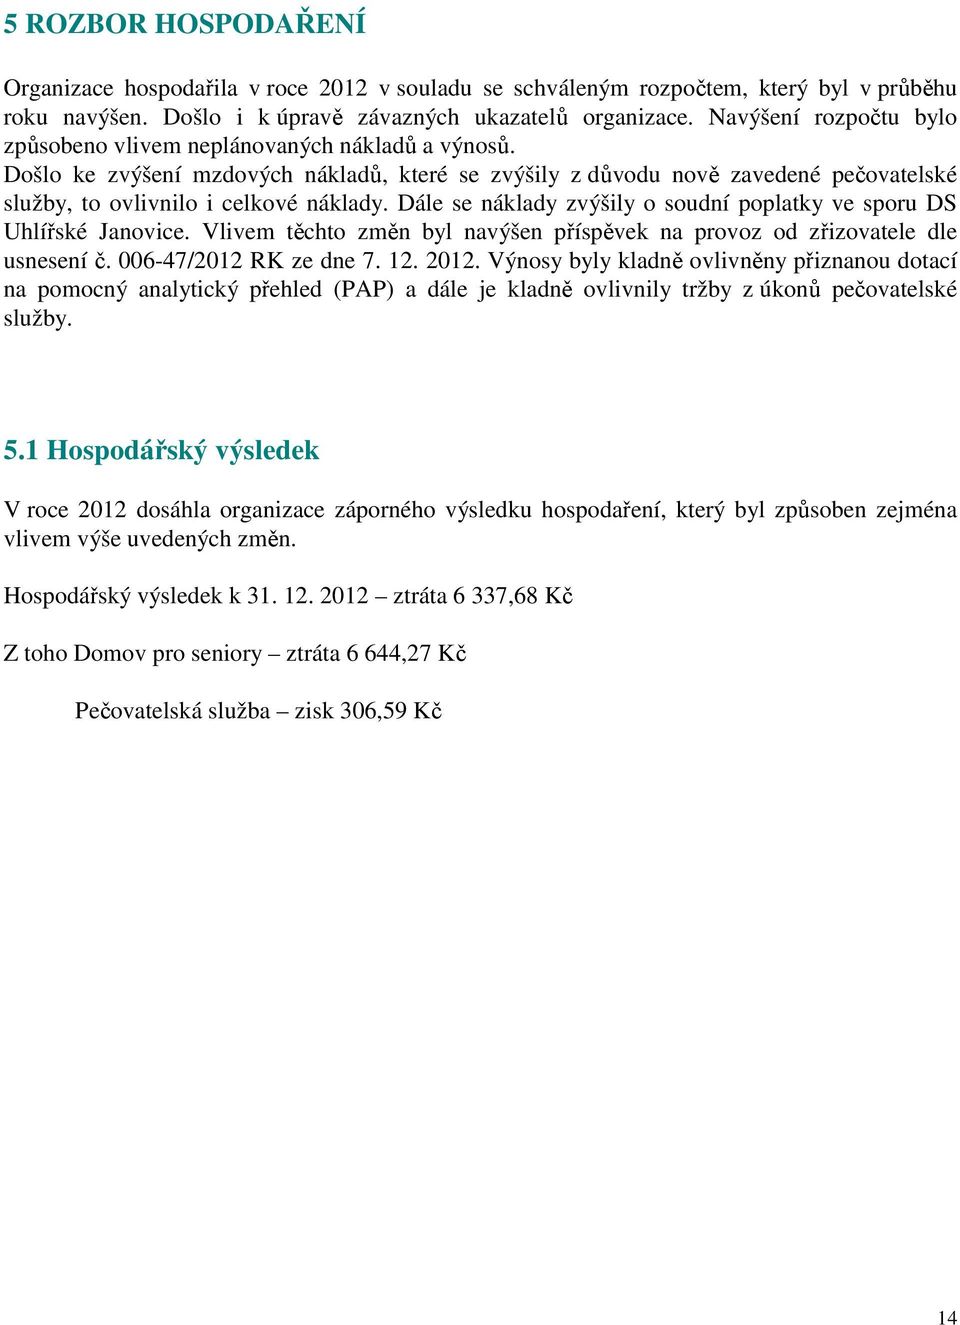 Dále se náklady zvýšily o soudní poplatky ve sporu DS Uhlířské Janovice. Vlivem těchto změn byl navýšen příspěvek na provoz od zřizovatele dle usnesení č. 006-47/2012 RK ze dne 7. 12. 2012.